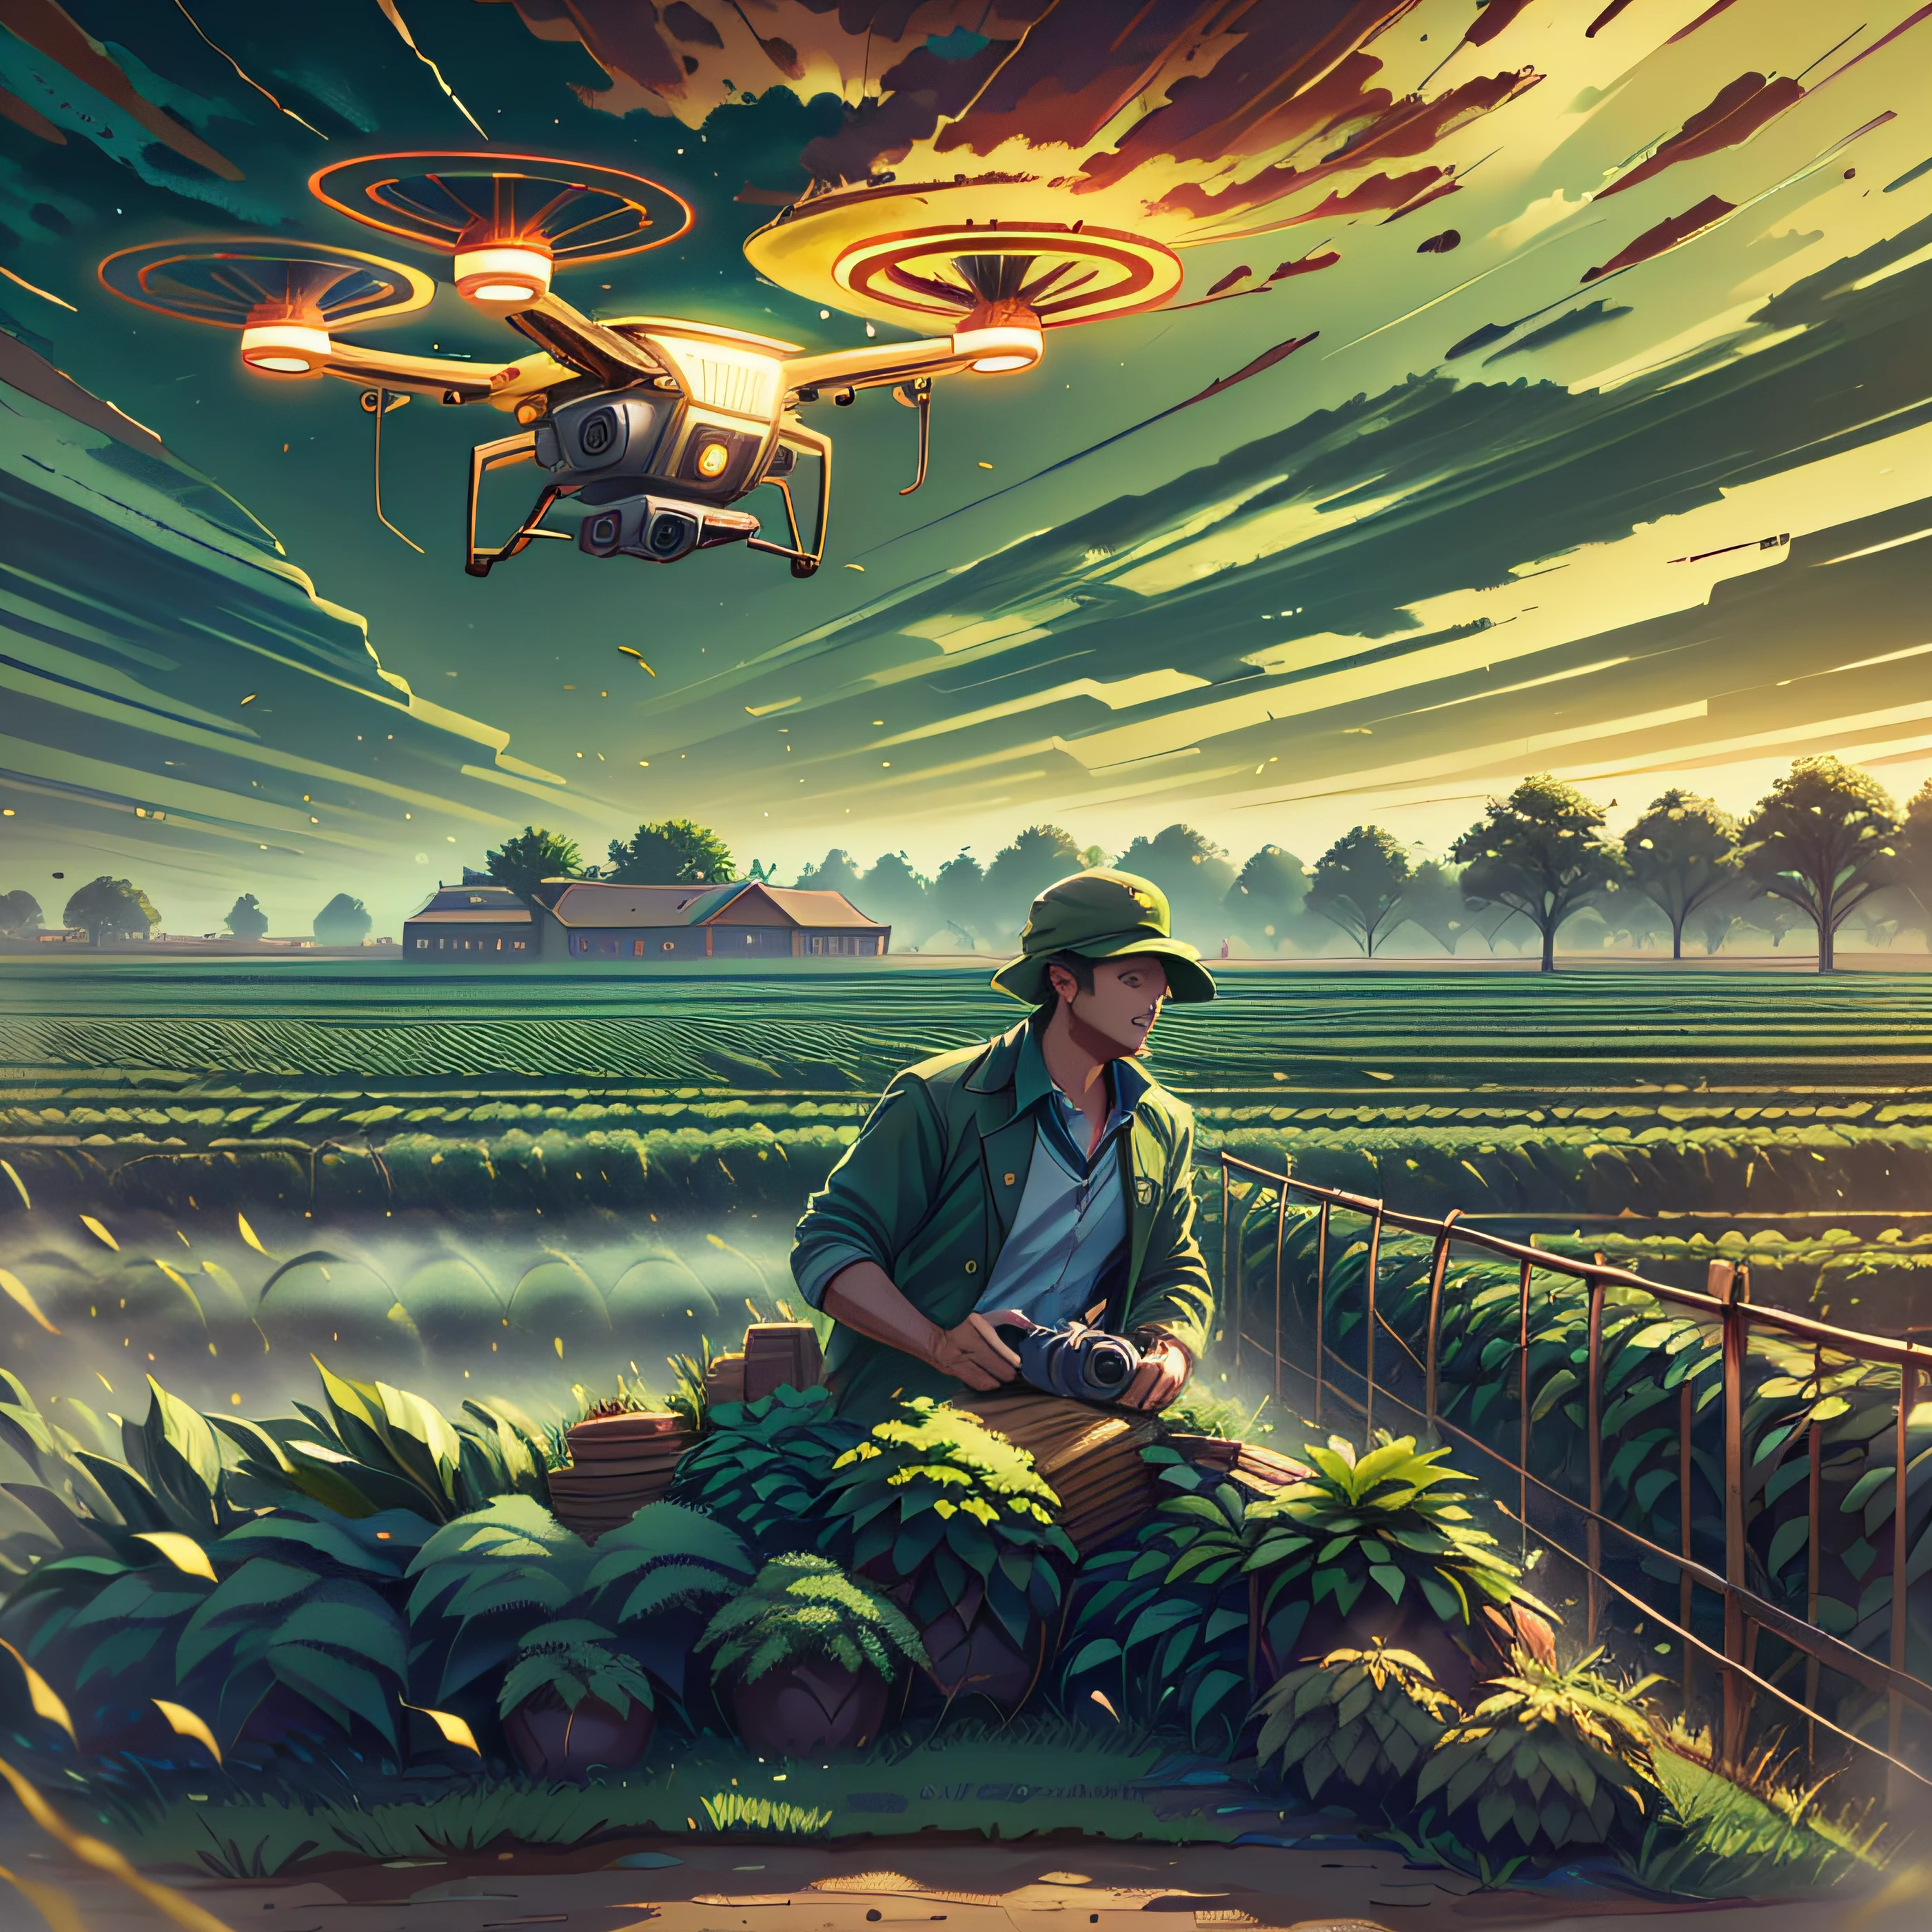 Imaginez une scène d&#39;une ferme moderne en pleine activité, Illuminé par le soleil couchant. au centre de l&#39;image, un robuste, agriculteur expérimenté, vêtu de vêtements de travail, lève les yeux, regarder un drone de haute technologie planer dans le ciel. Le drone, brille au soleil, est équipé de caméras et de capteurs, représentant la fusion de l’agriculture et de la technologie. La ferme environnante est verte et fertile, avec des rangées de plantations s&#39;étendant à l&#39;horizon. Utilisez un appareil photo reflex numérique haute résolution, comme le Canon EOS 5D Mark IV, avec un objectif de 50 mm pour capturer cette scène avec des détails éclatants. L&#39;éclairage doit être naturel, avec le soleil couchant apportant une lueur dorée à la scène. Les couleurs doivent être riches et saturées, avec les verts vibrants des plantations et le ciel bleu clair. La composition doit être équilibrée, avec le fermier et le drone au centre, et la vaste ferme qui s&#39;étend autour d&#39;eux. --Air 16:9h -- à 17h.1 --Style brut --Q 2 --S 750